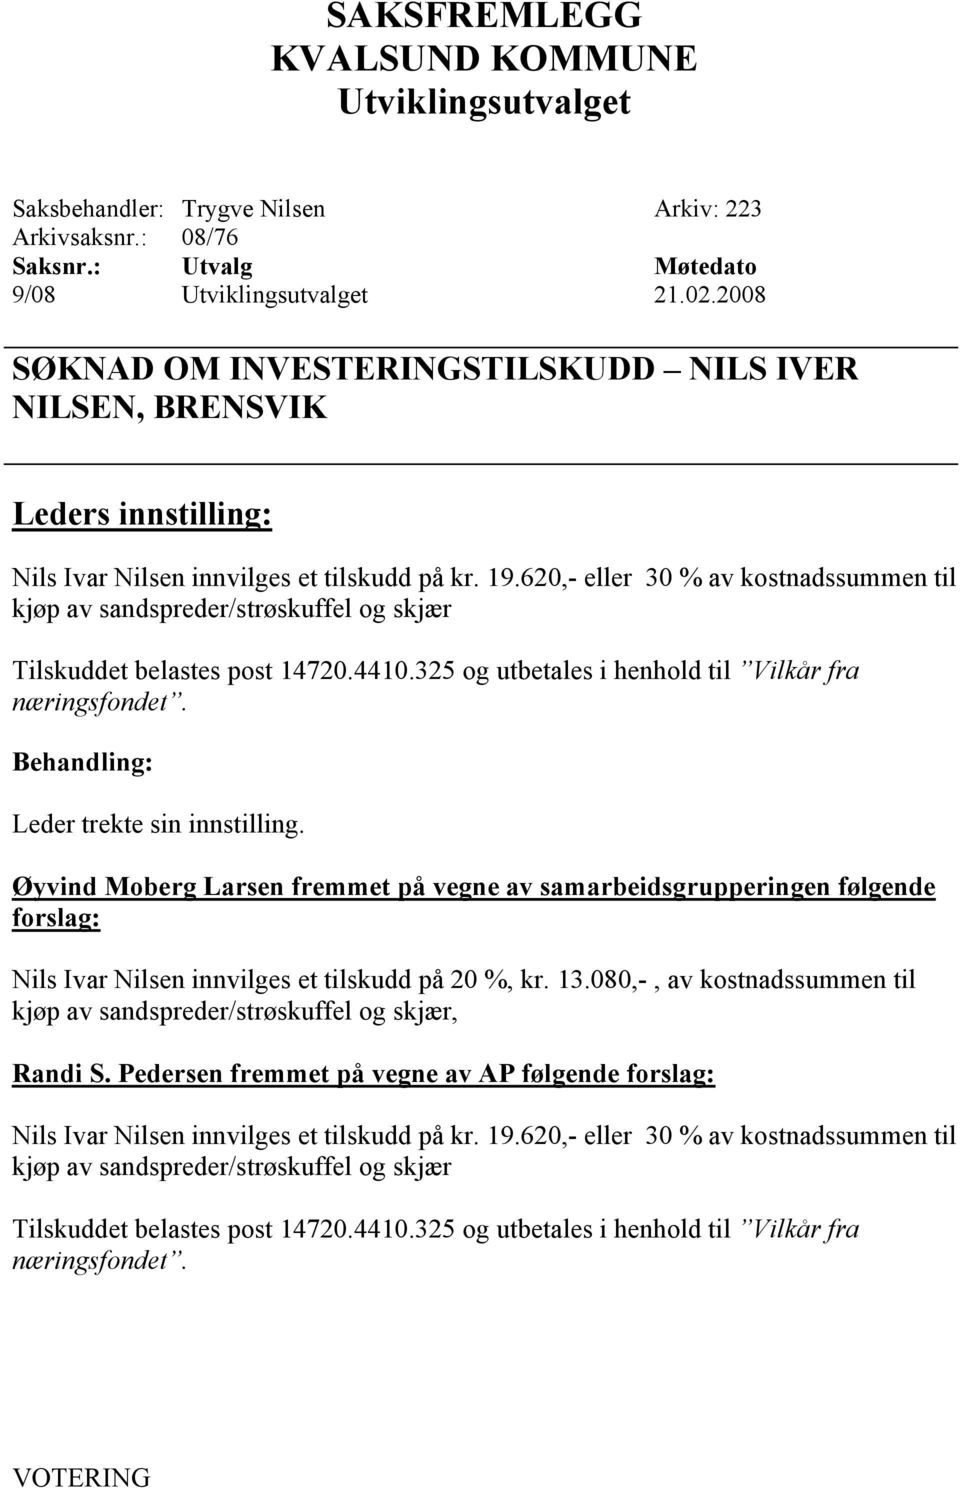 Leder trekte sin innstilling. Øyvind Moberg Larsen fremmet på vegne av samarbeidsgrupperingen følgende forslag: Nils Ivar Nilsen innvilges et tilskudd på 20 %, kr. 13.